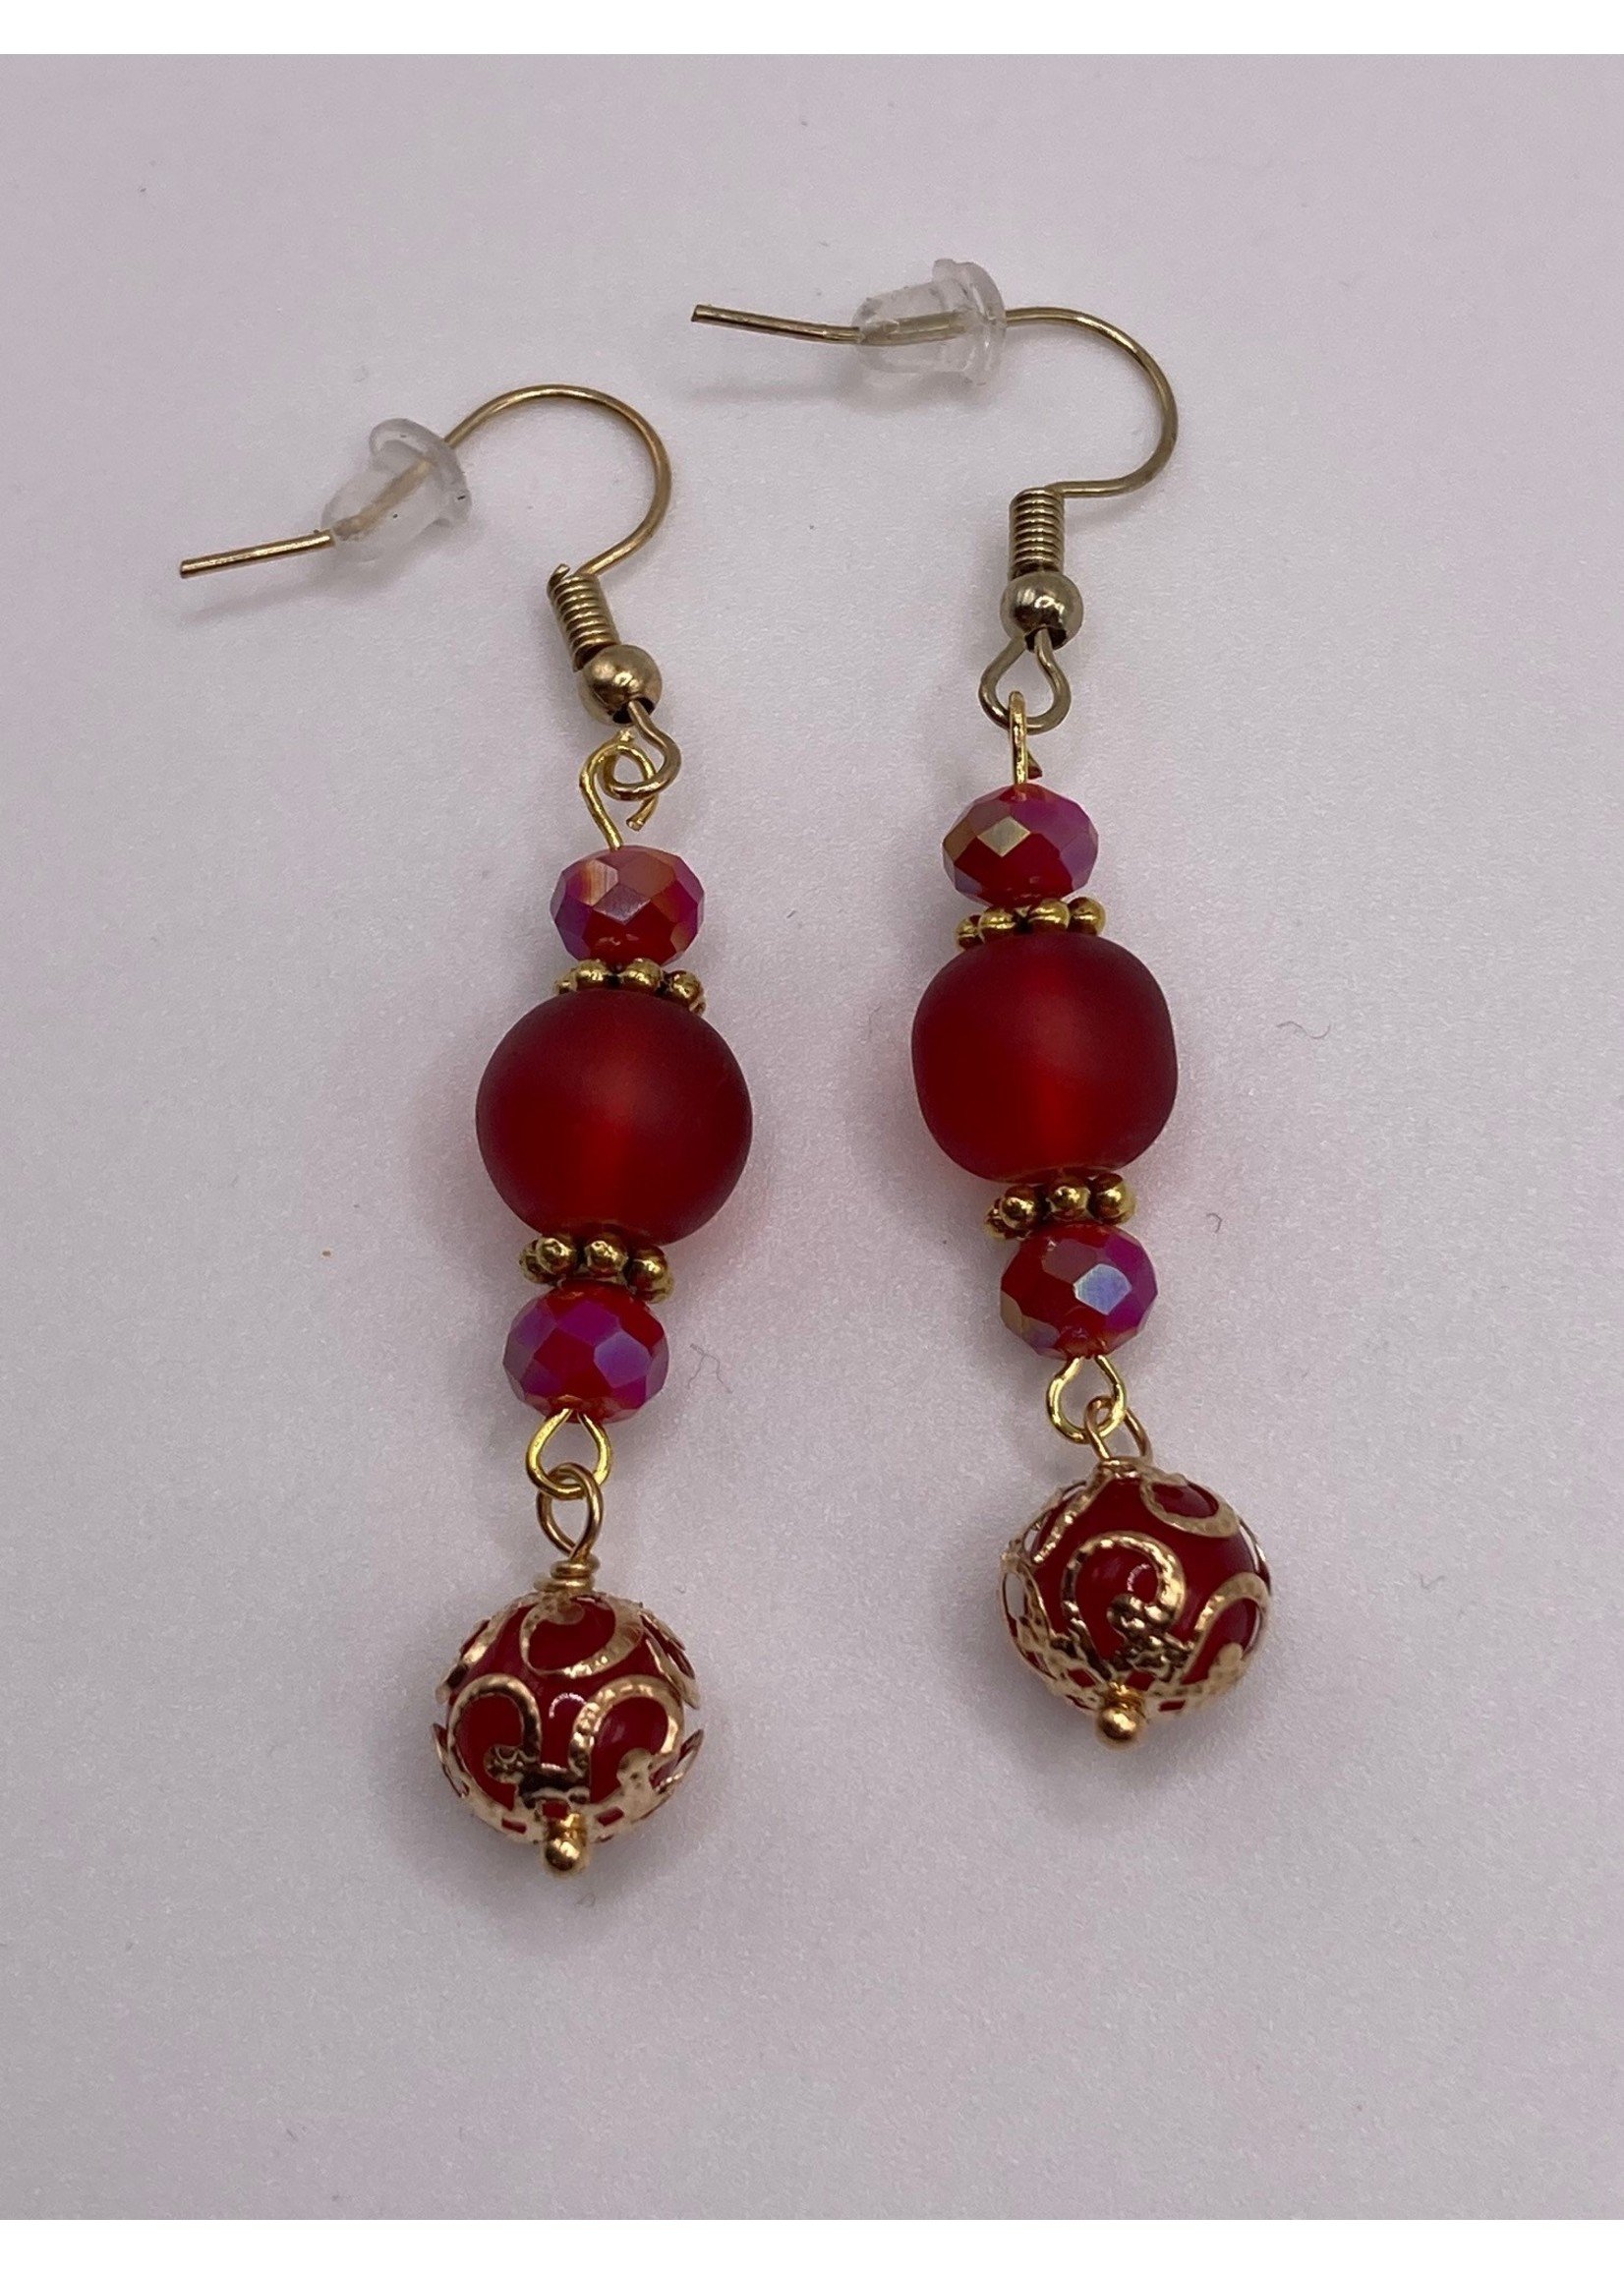 Boho chic jewelry / lampwork bead earring/czech glass earrings / gifts —  San José Made